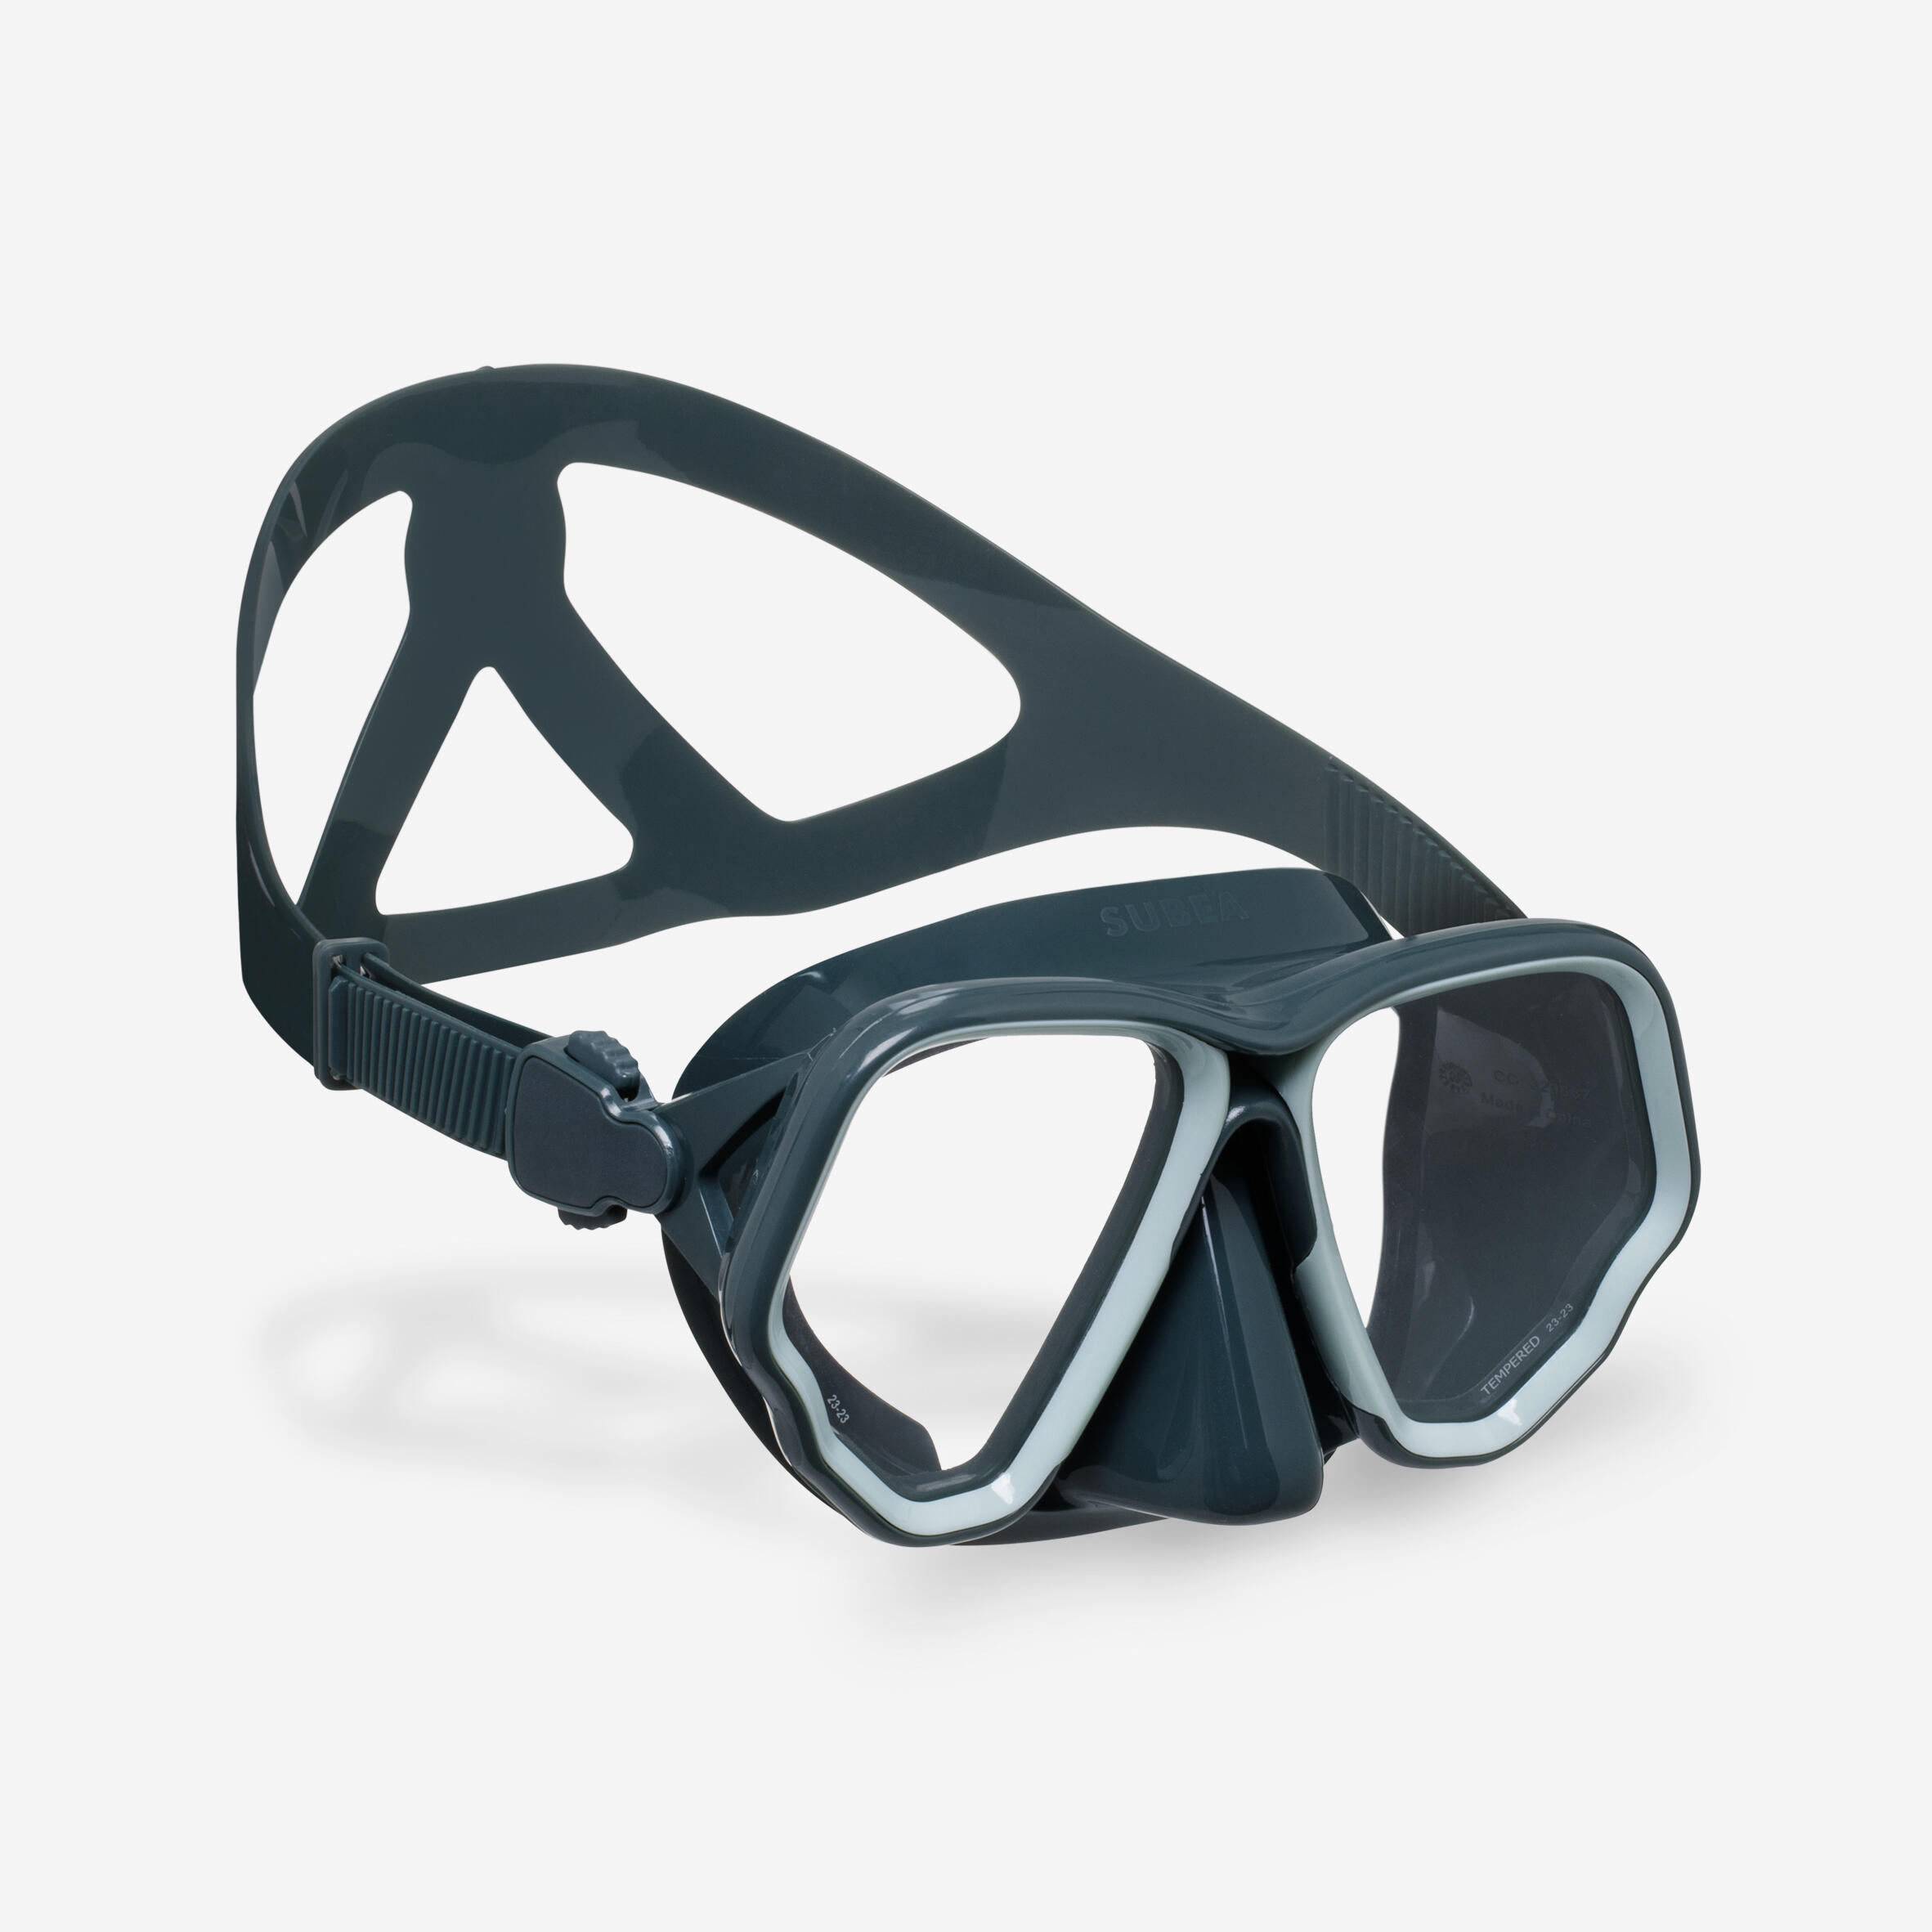 Diving mask - 500 Dual black khaki 1/7